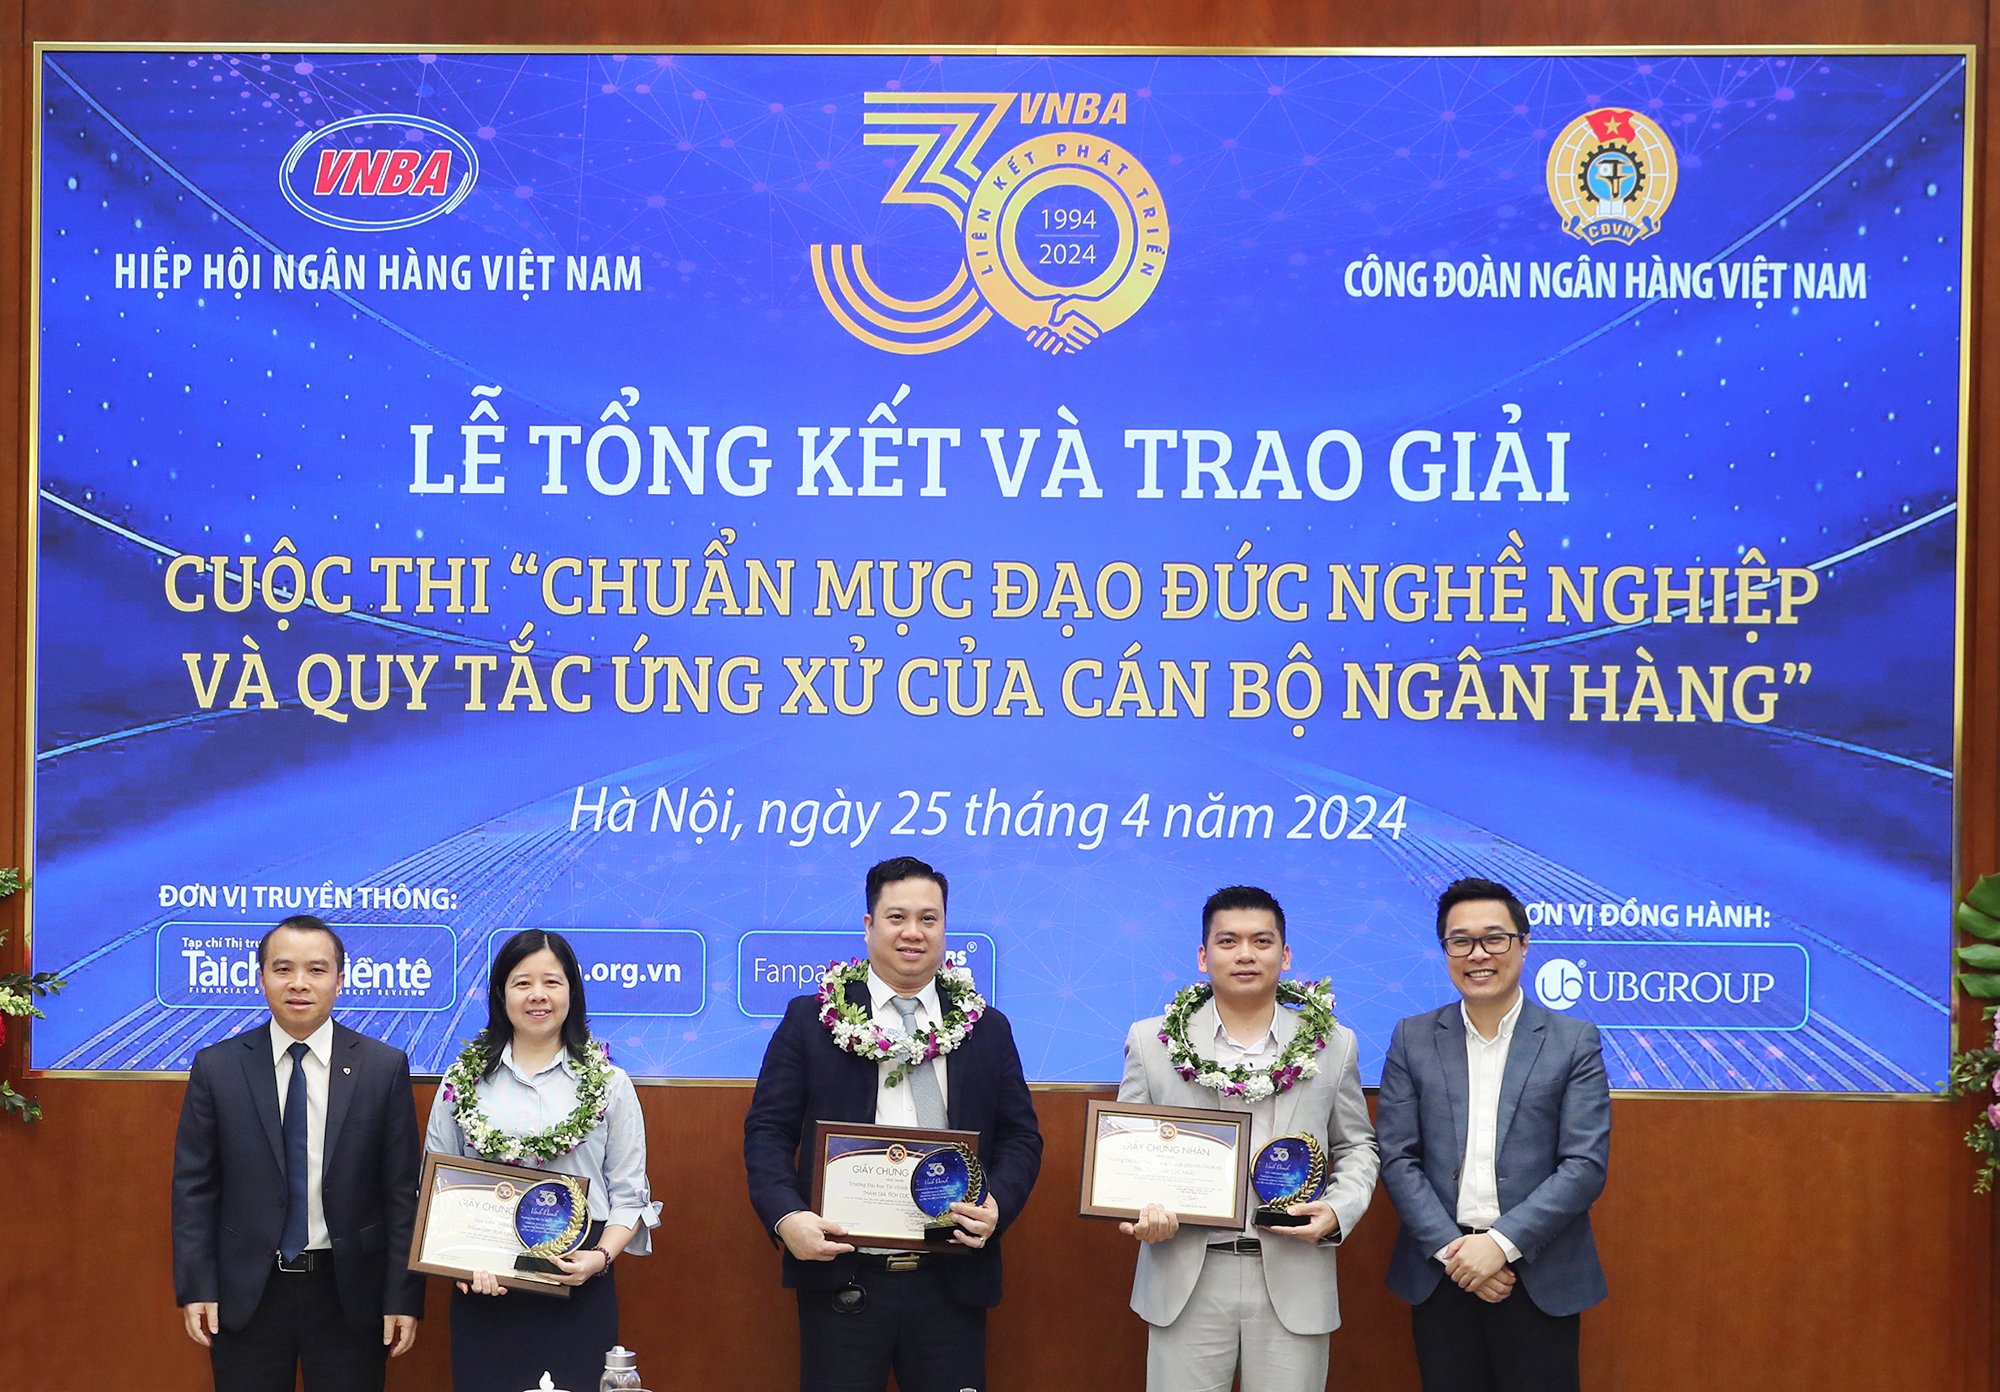 Ông Đỗ Việt Hùng và ông Vũ Việt Hưng trao hoa, cúp, giấy chứng nhận cho 3 trường đại học tham gia tích cực.